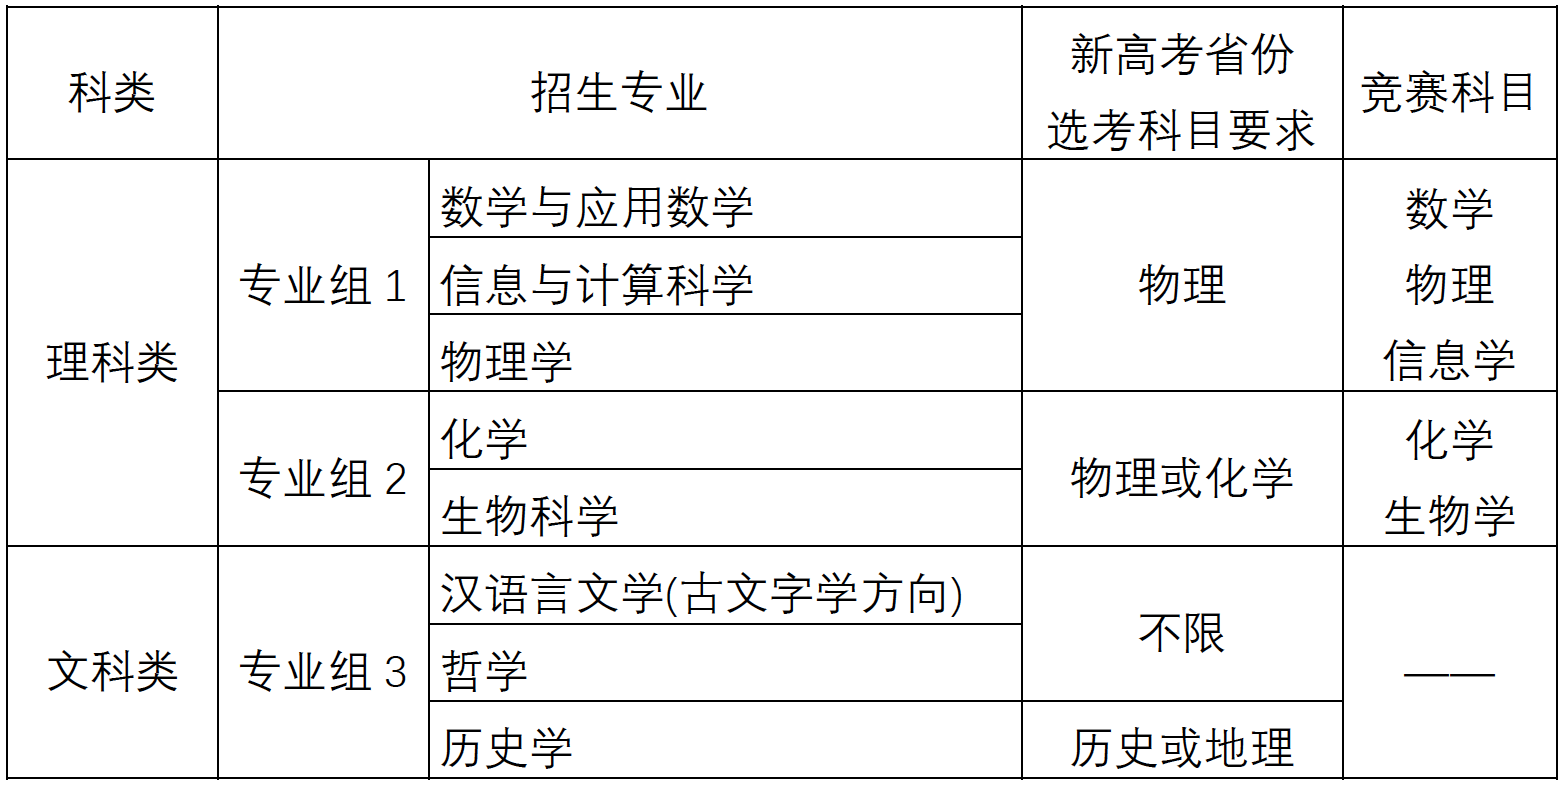 南京大学2020年强基计划招生简章1